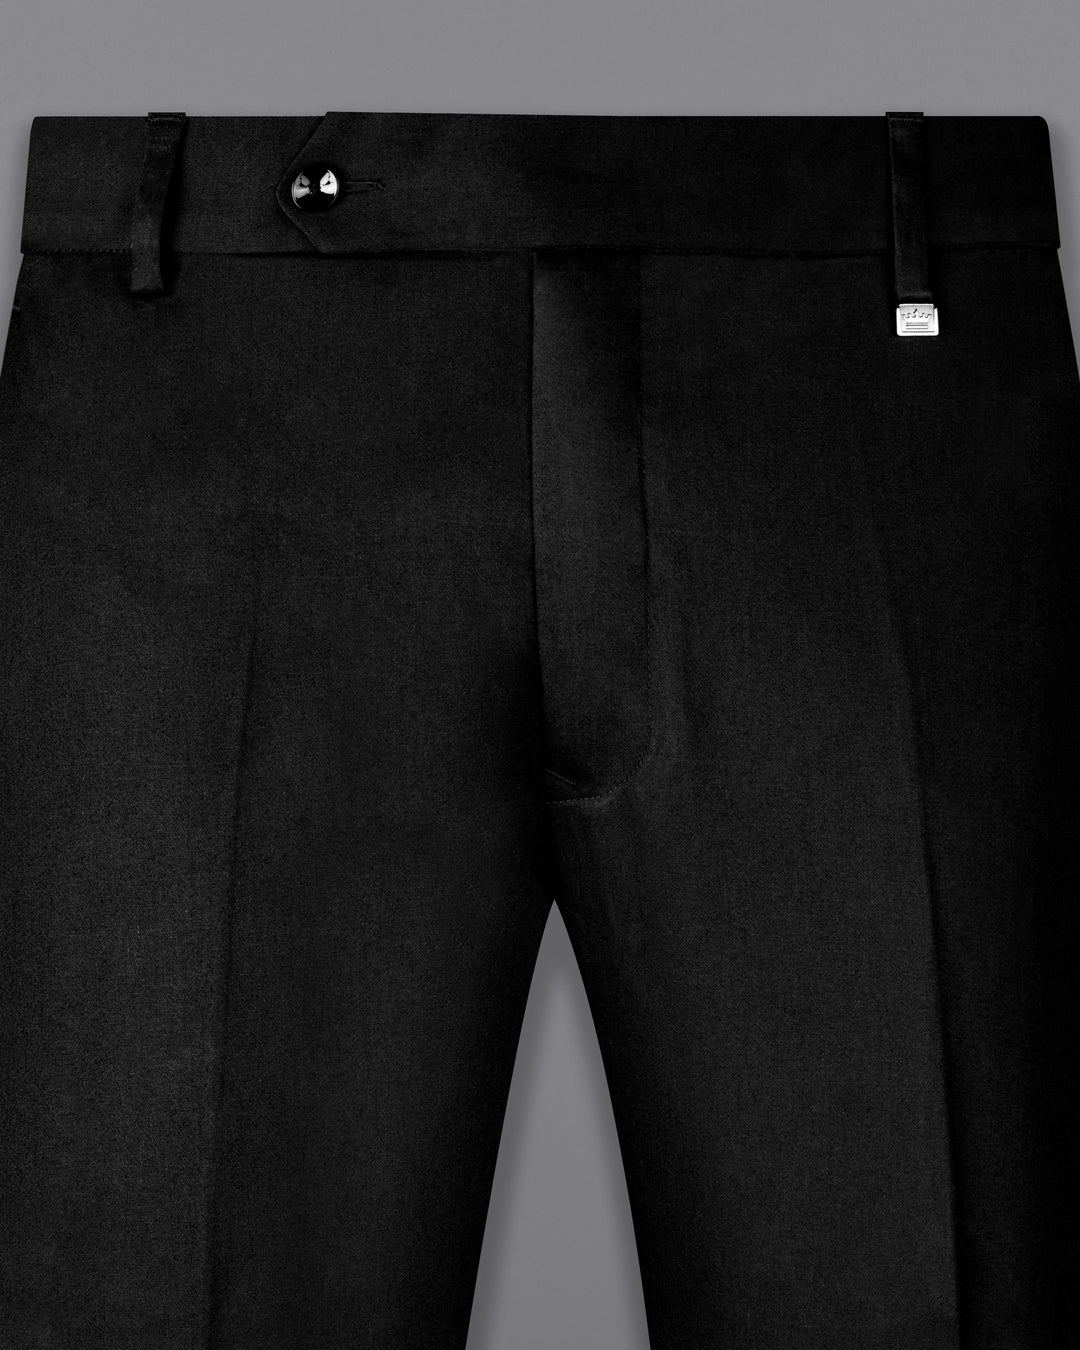 Urbano Fashion Chinos  Buy Urbano Fashion Men Steel Blue Cotton Slim Fit  Casual Chinos Trousers Stretch Online  Nykaa Fashion